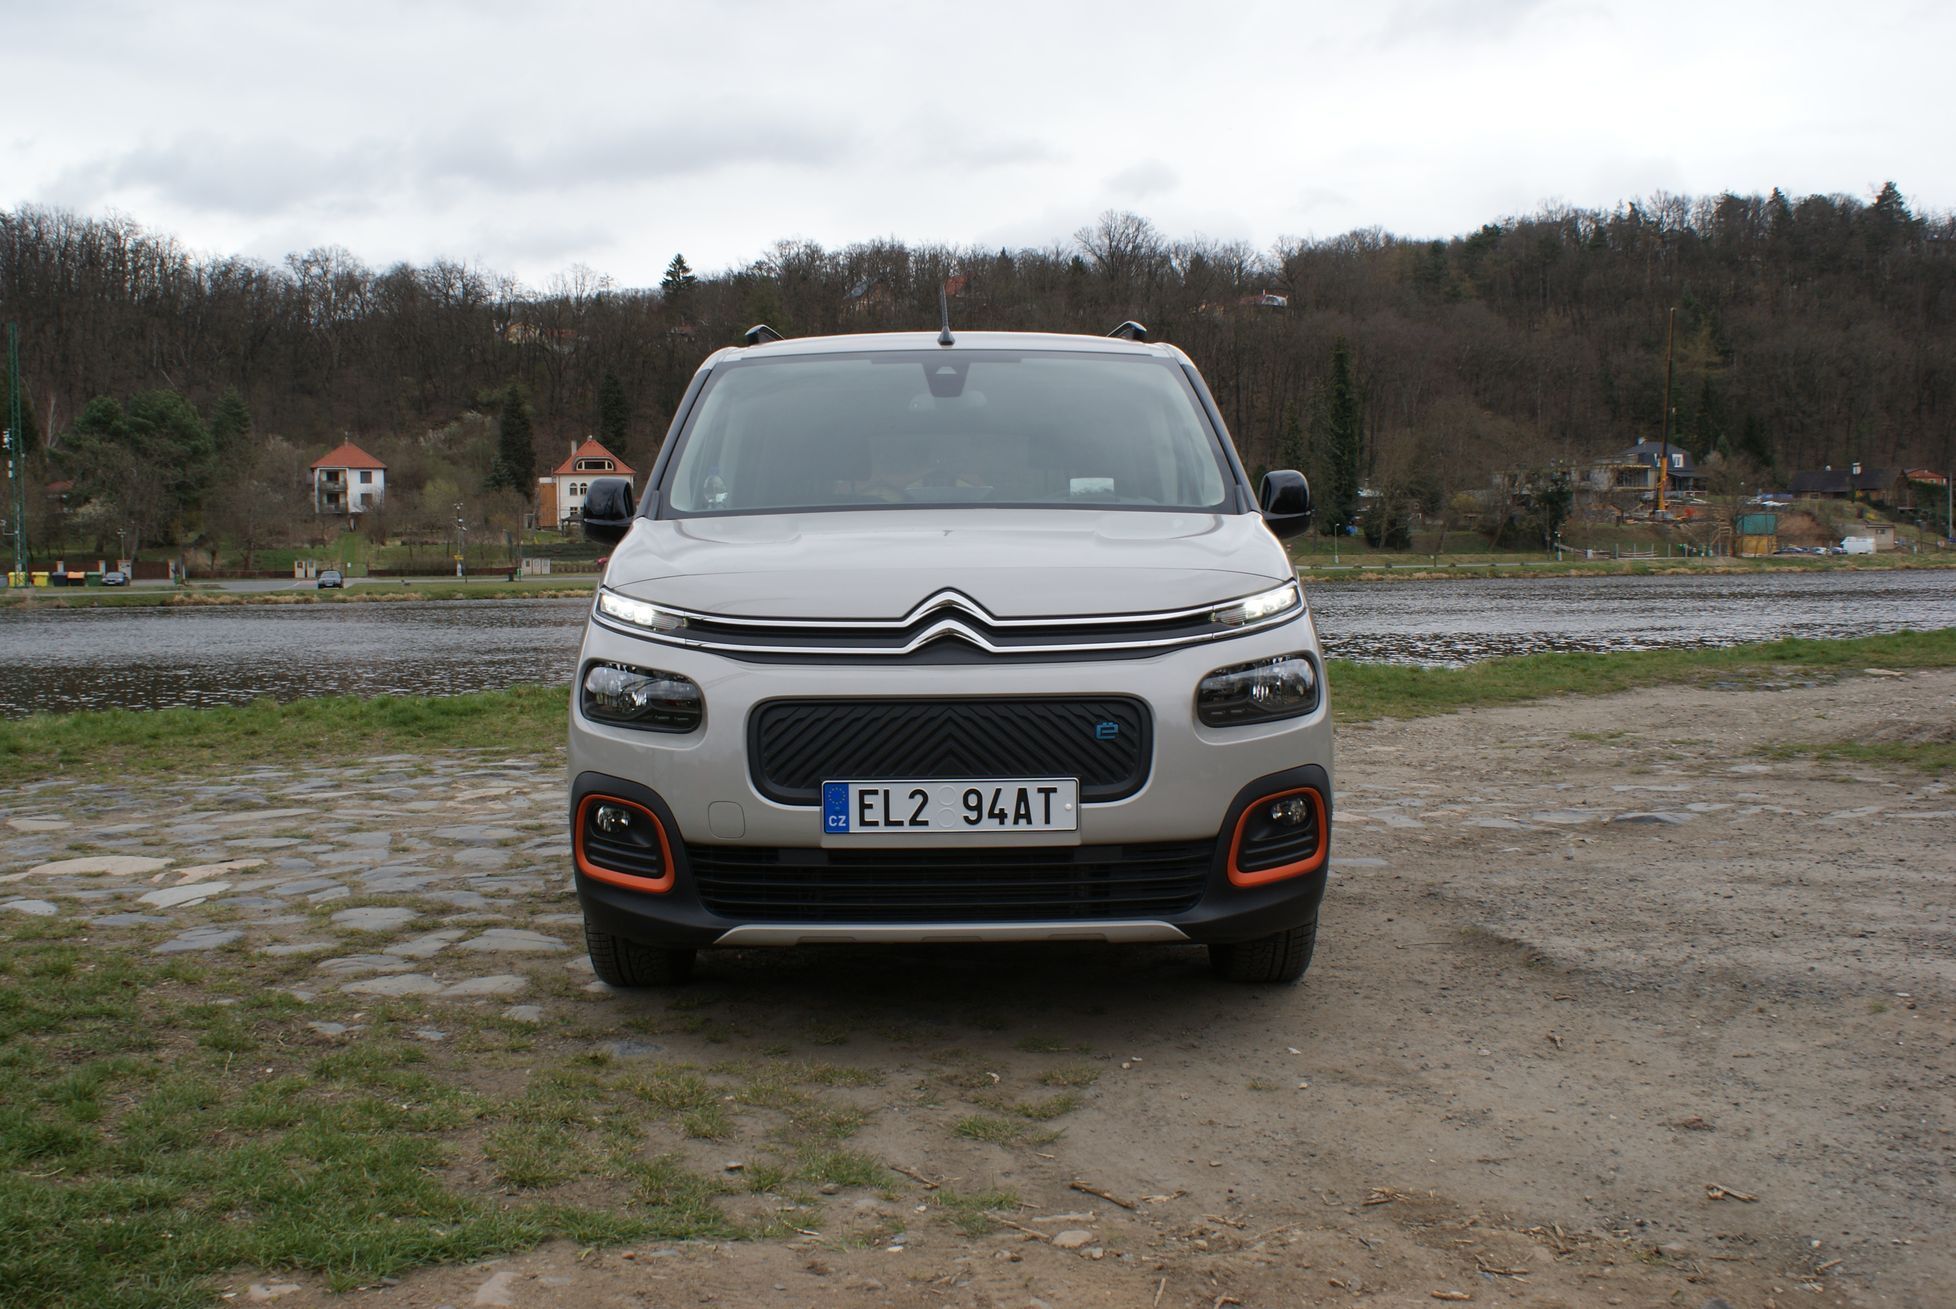 Citroën ë-berlingo 2022